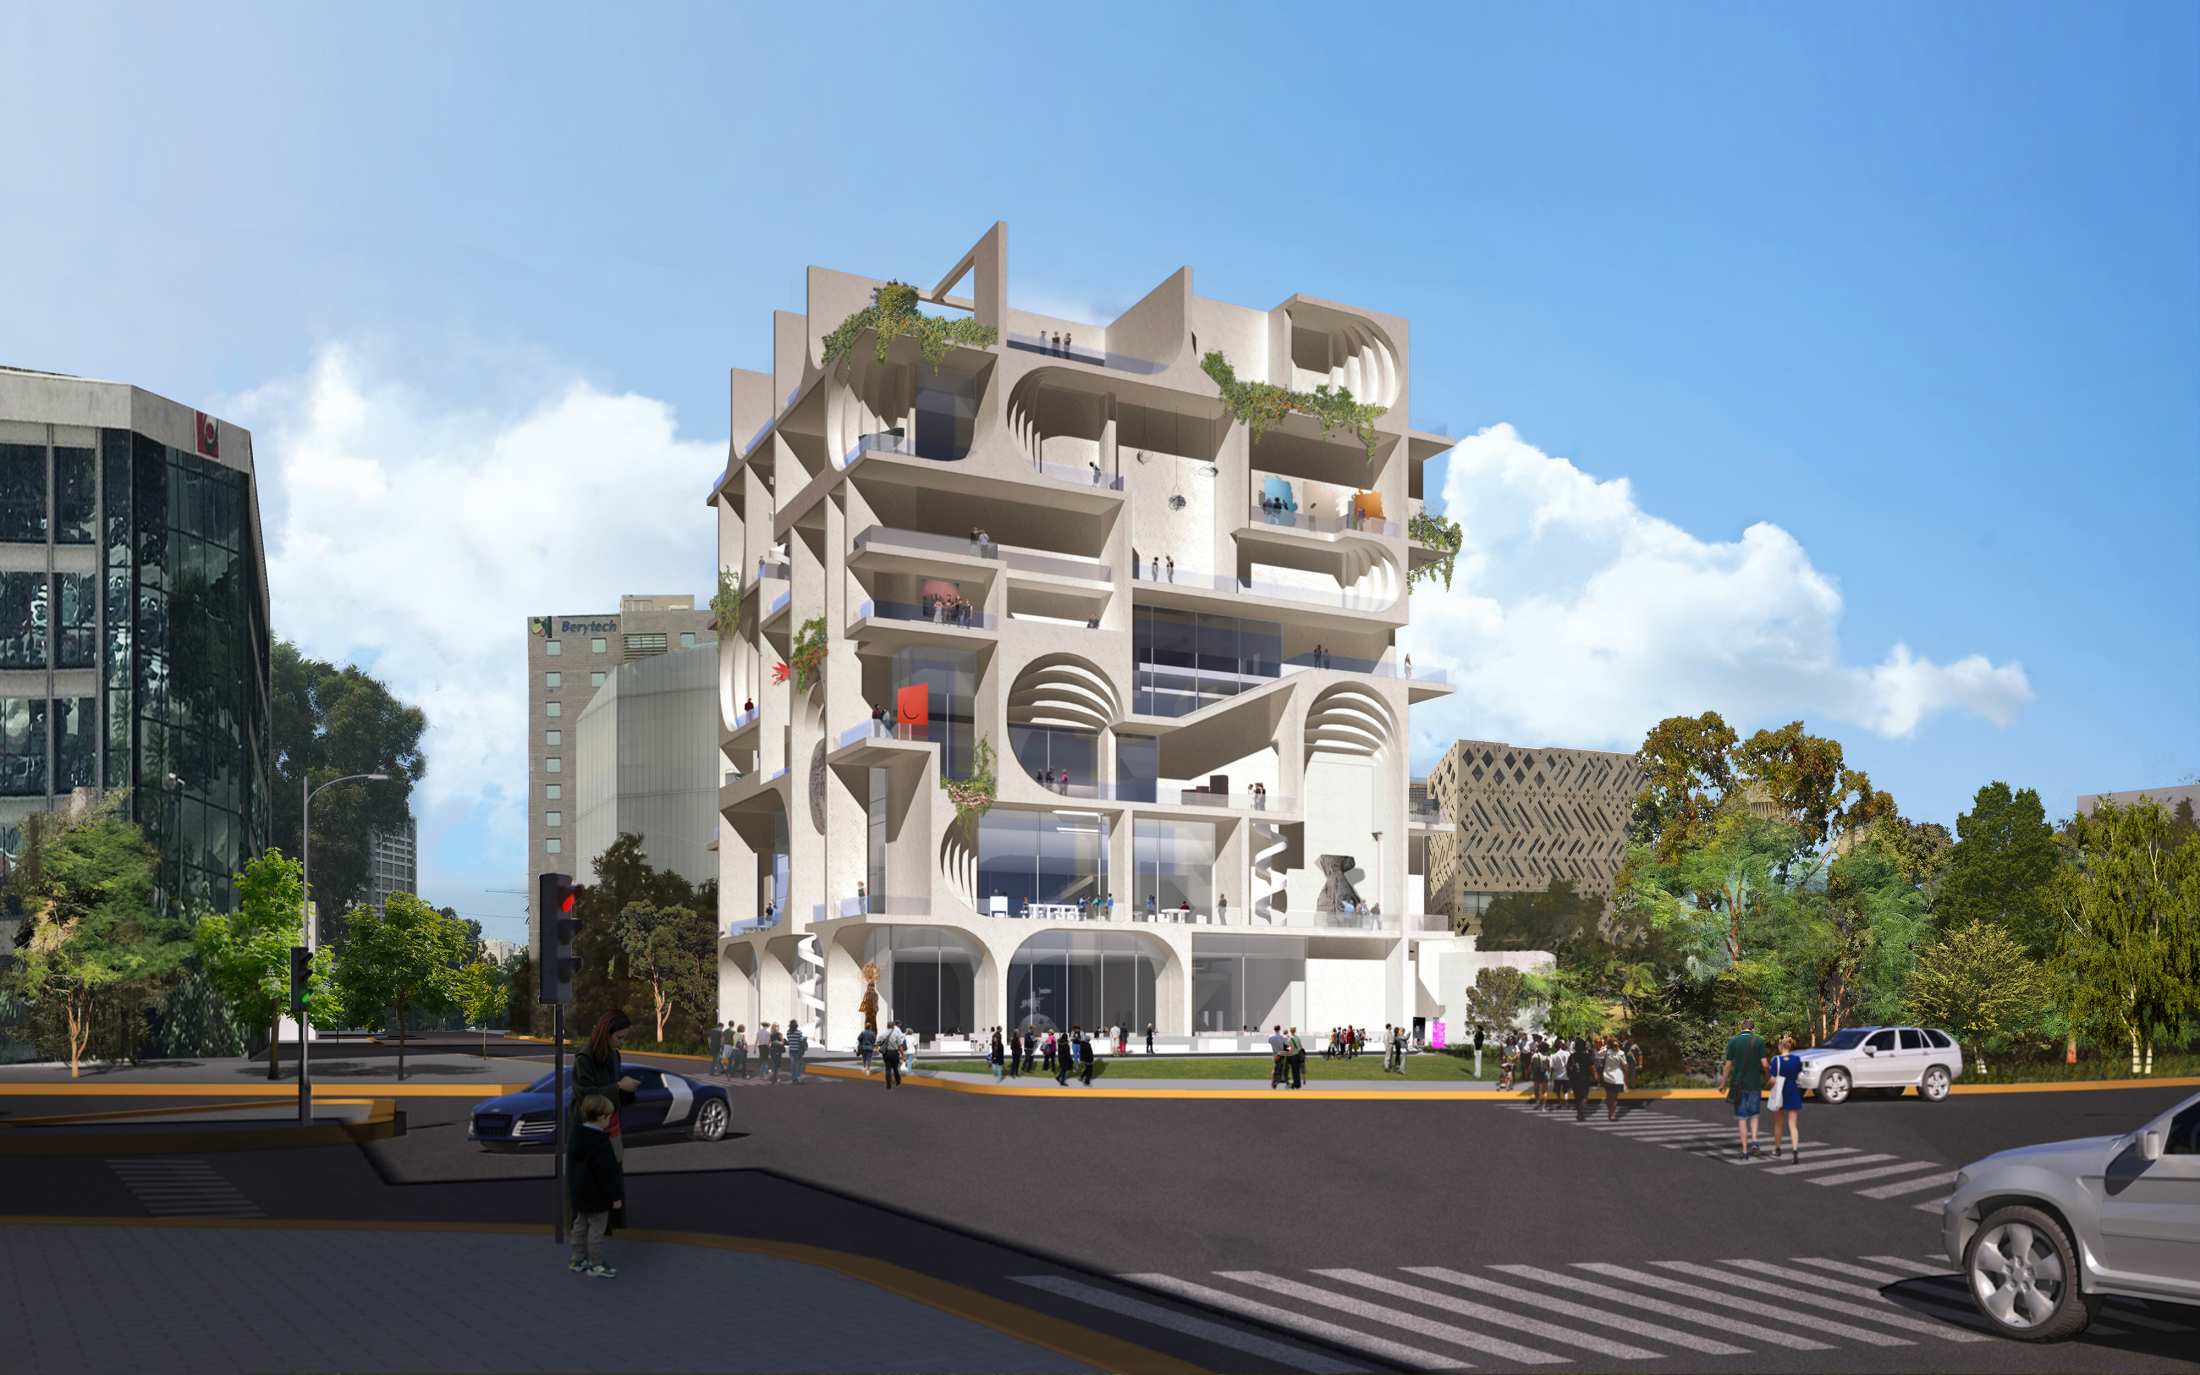 レバノン生まれの建築家 Amale Andraos ベイルート美術館のデザイン案を公開 | AXIS Web |  デザインの視点で、人間の可能性や創造性を伝えるメディア